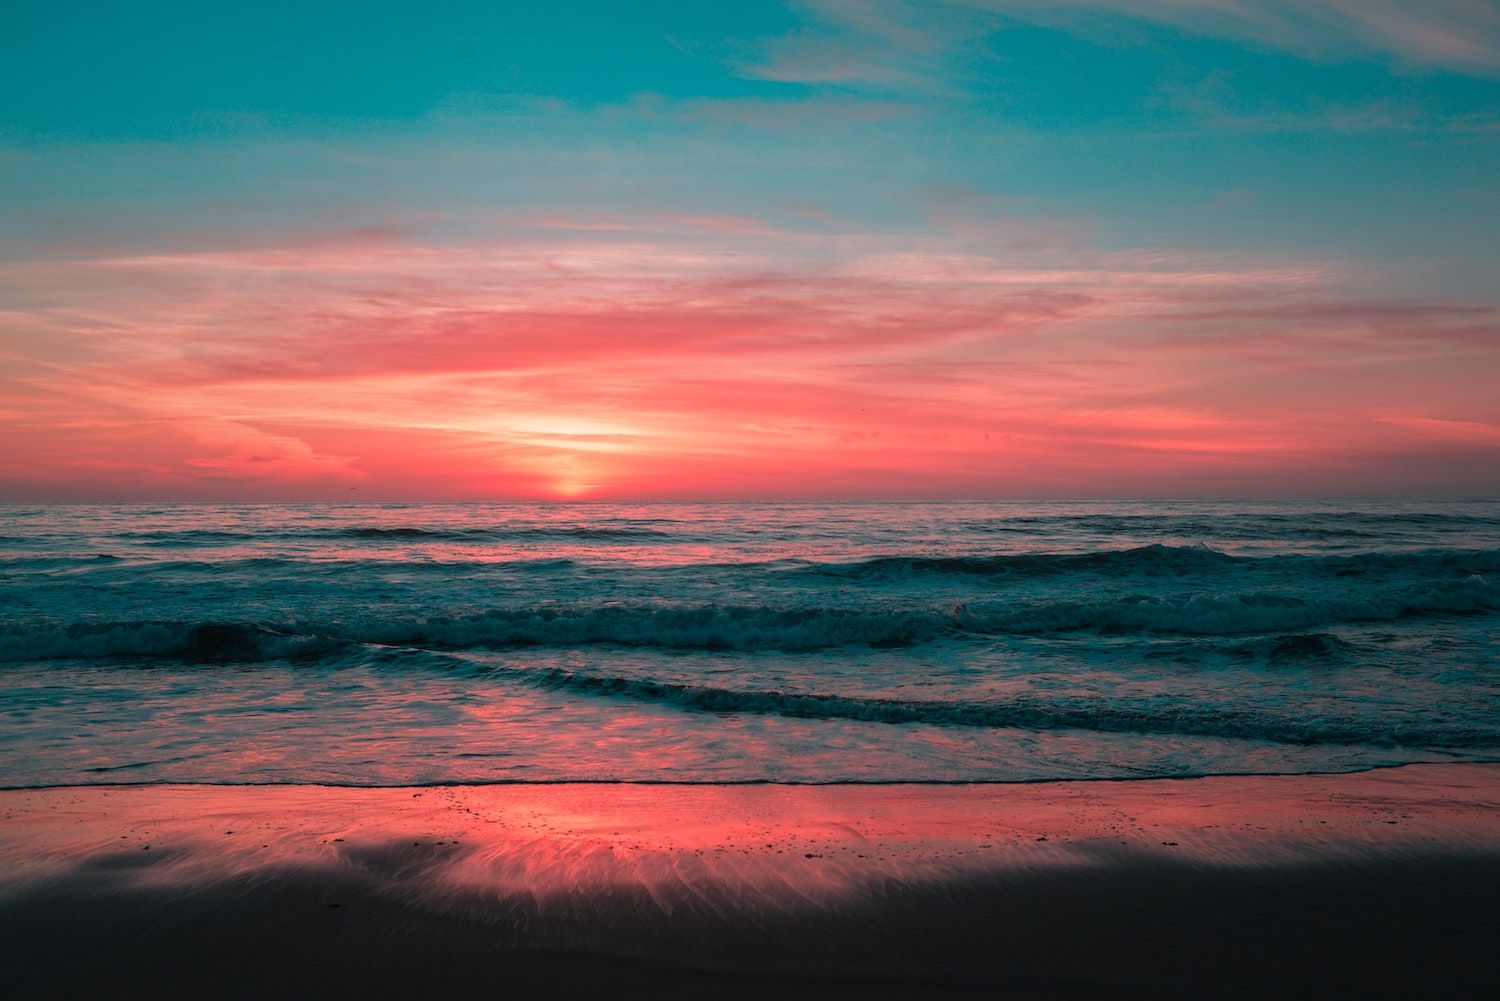 Cherish the sunset at Rosarito beach